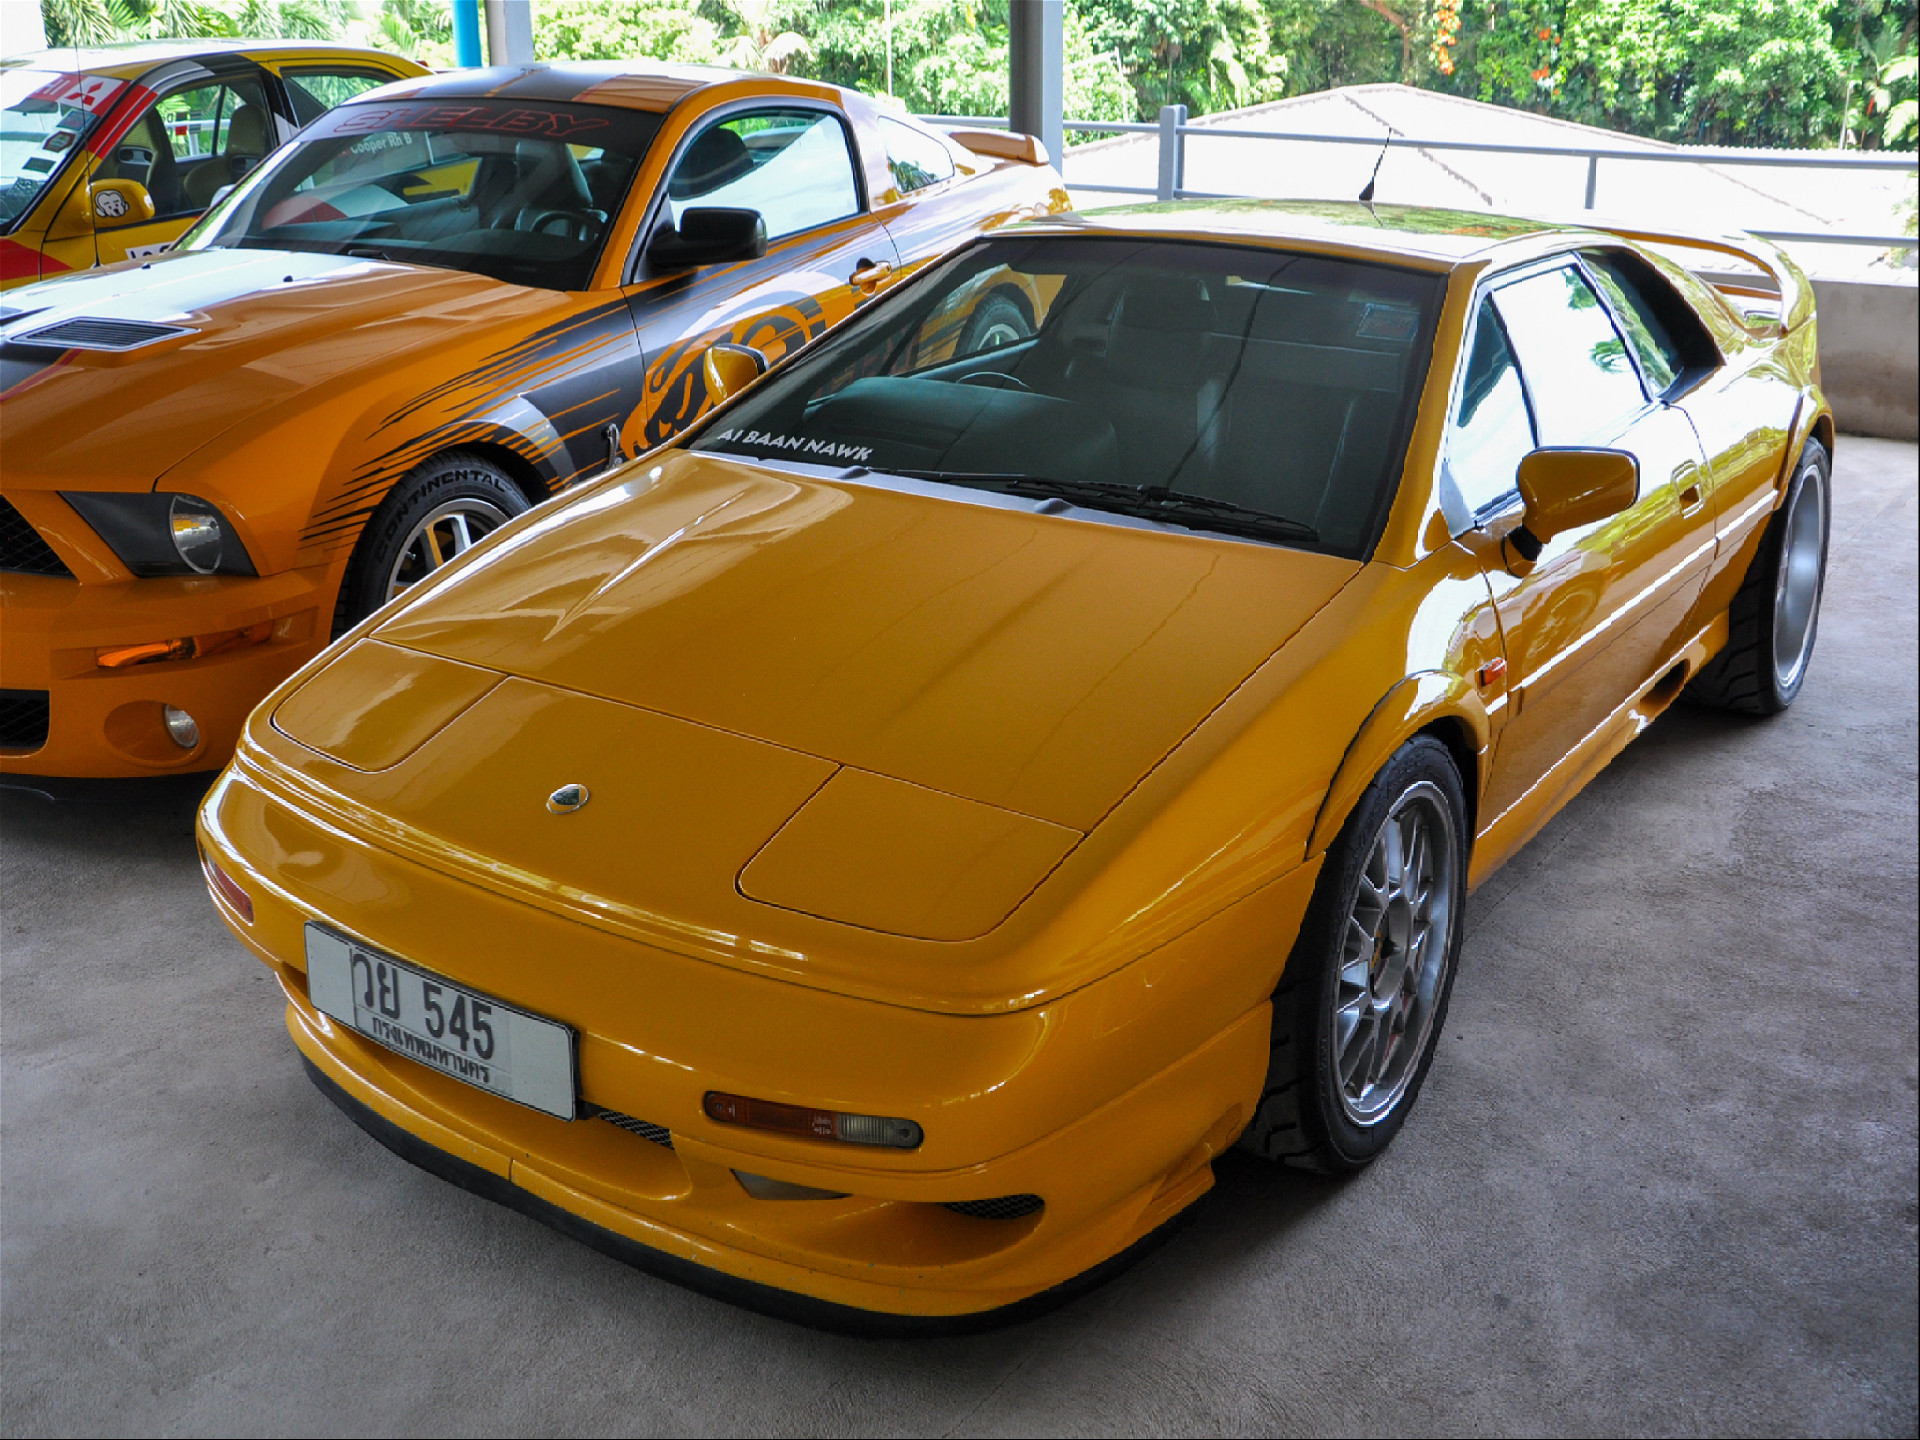 Спортивный автомобиль Lotus Esprit желтого цвета